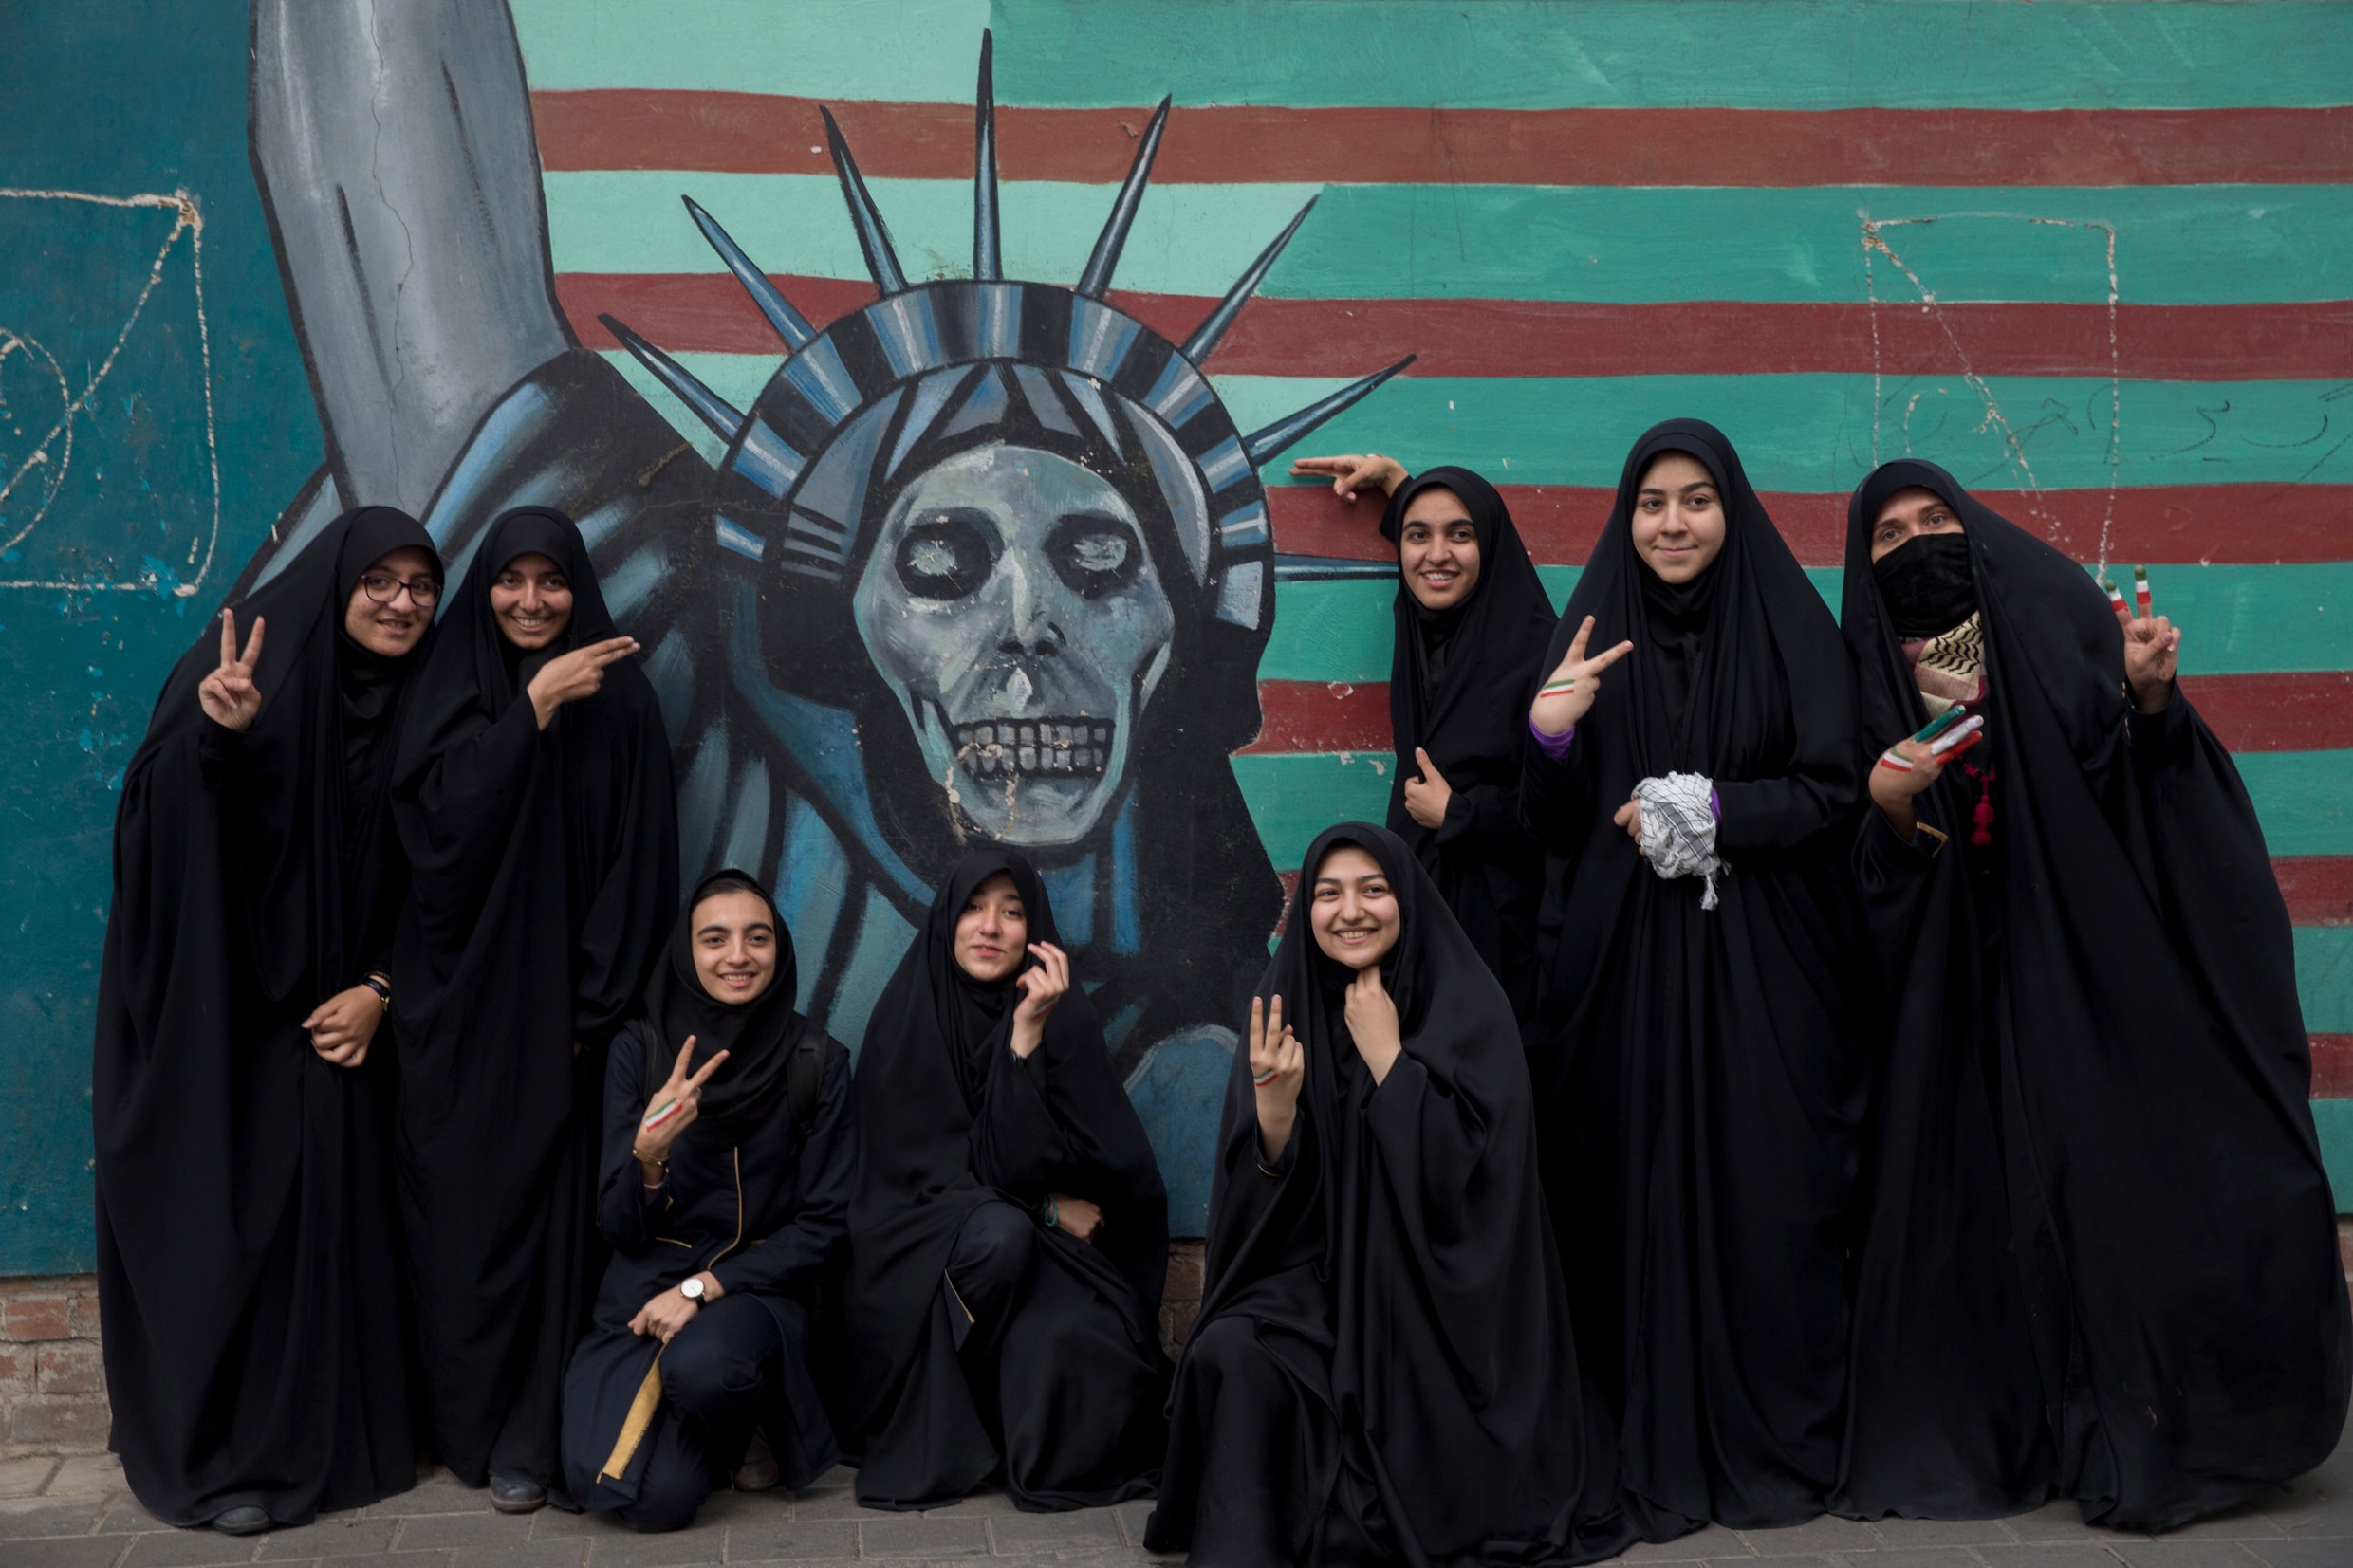 In Beeld: Iraniërs protesteren tegen Amerikaanse sancties